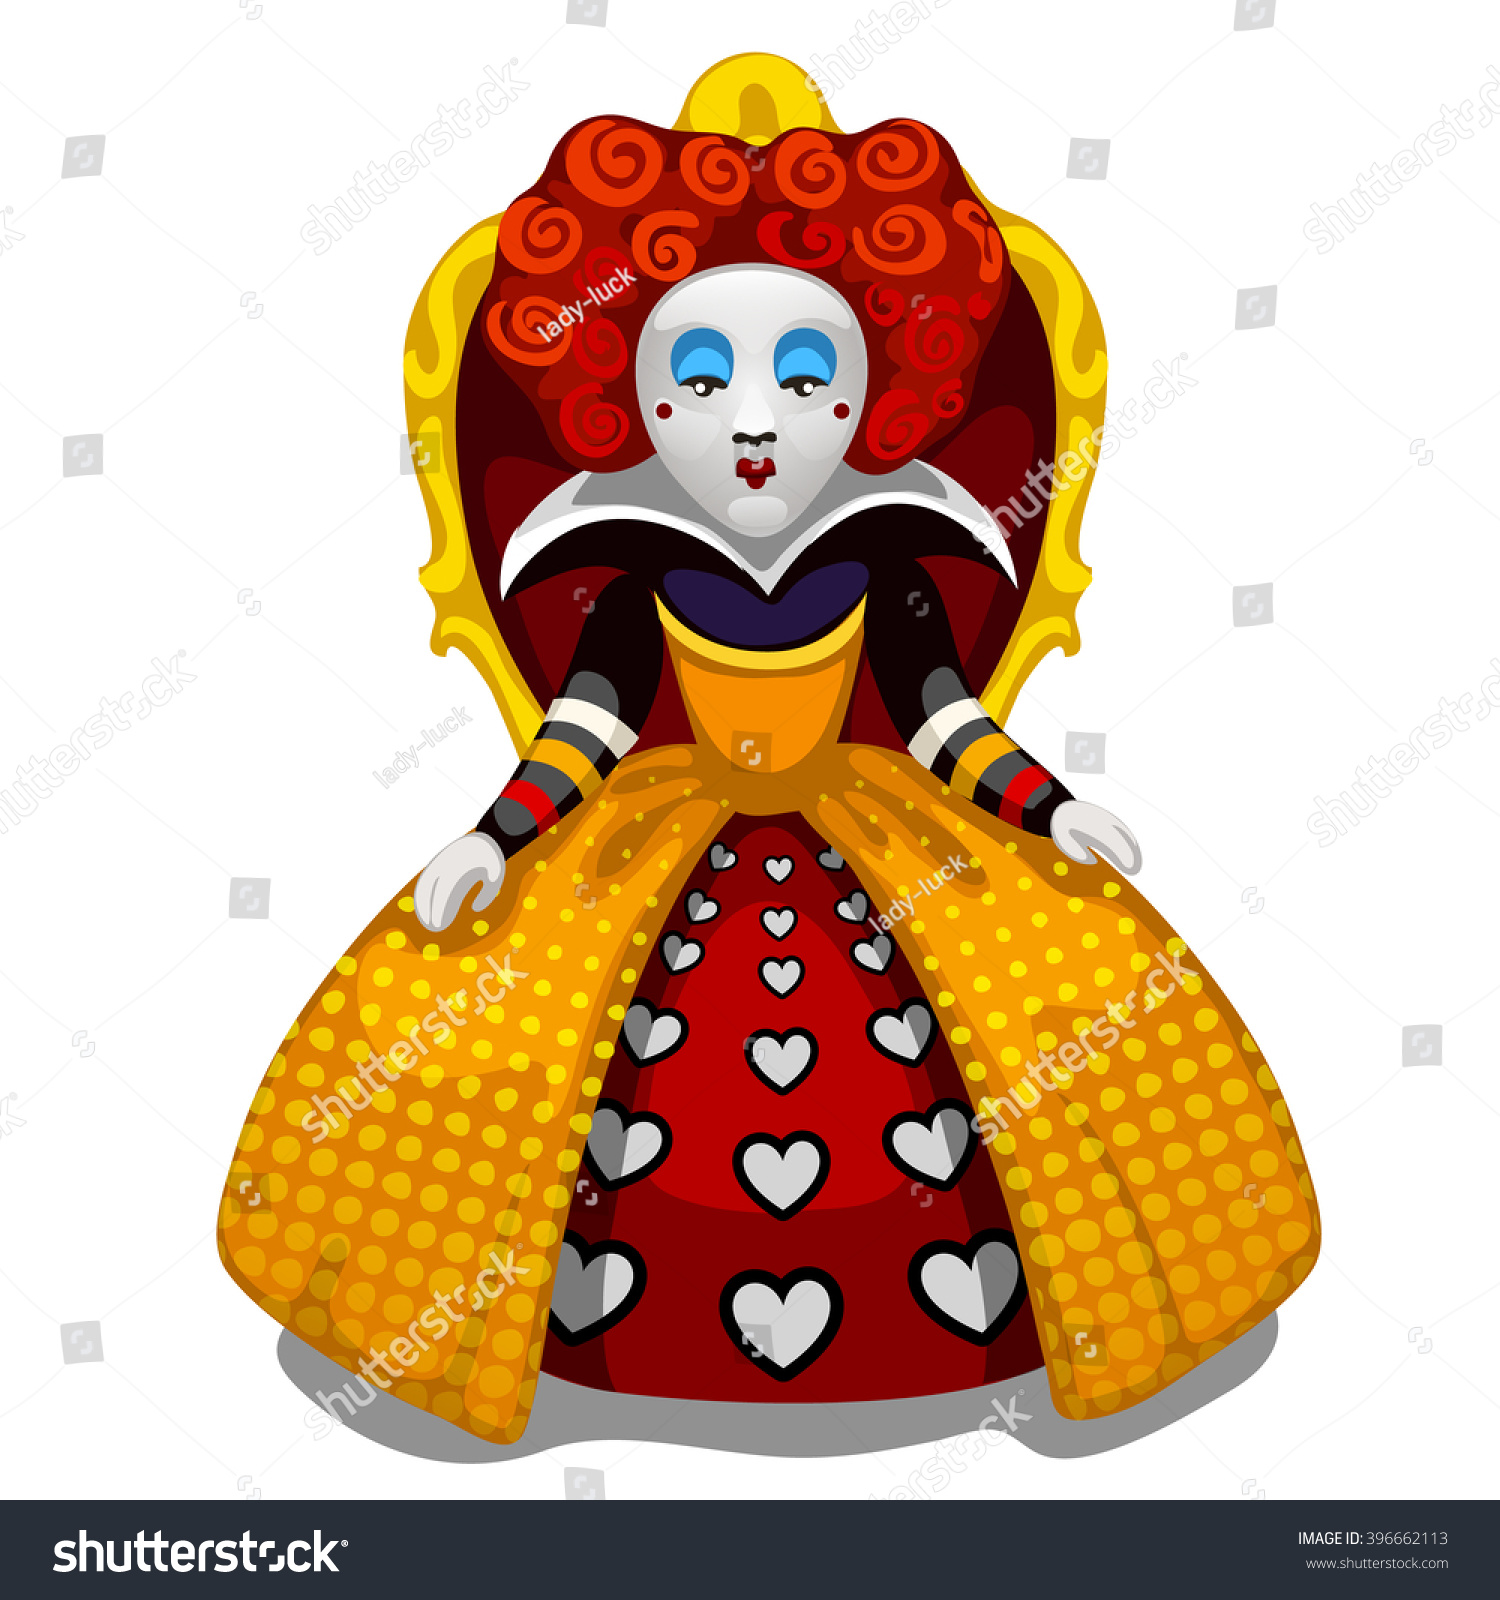 705 Queen hearts wonderland Images, Stock Photos & Vectors | Shutterstock